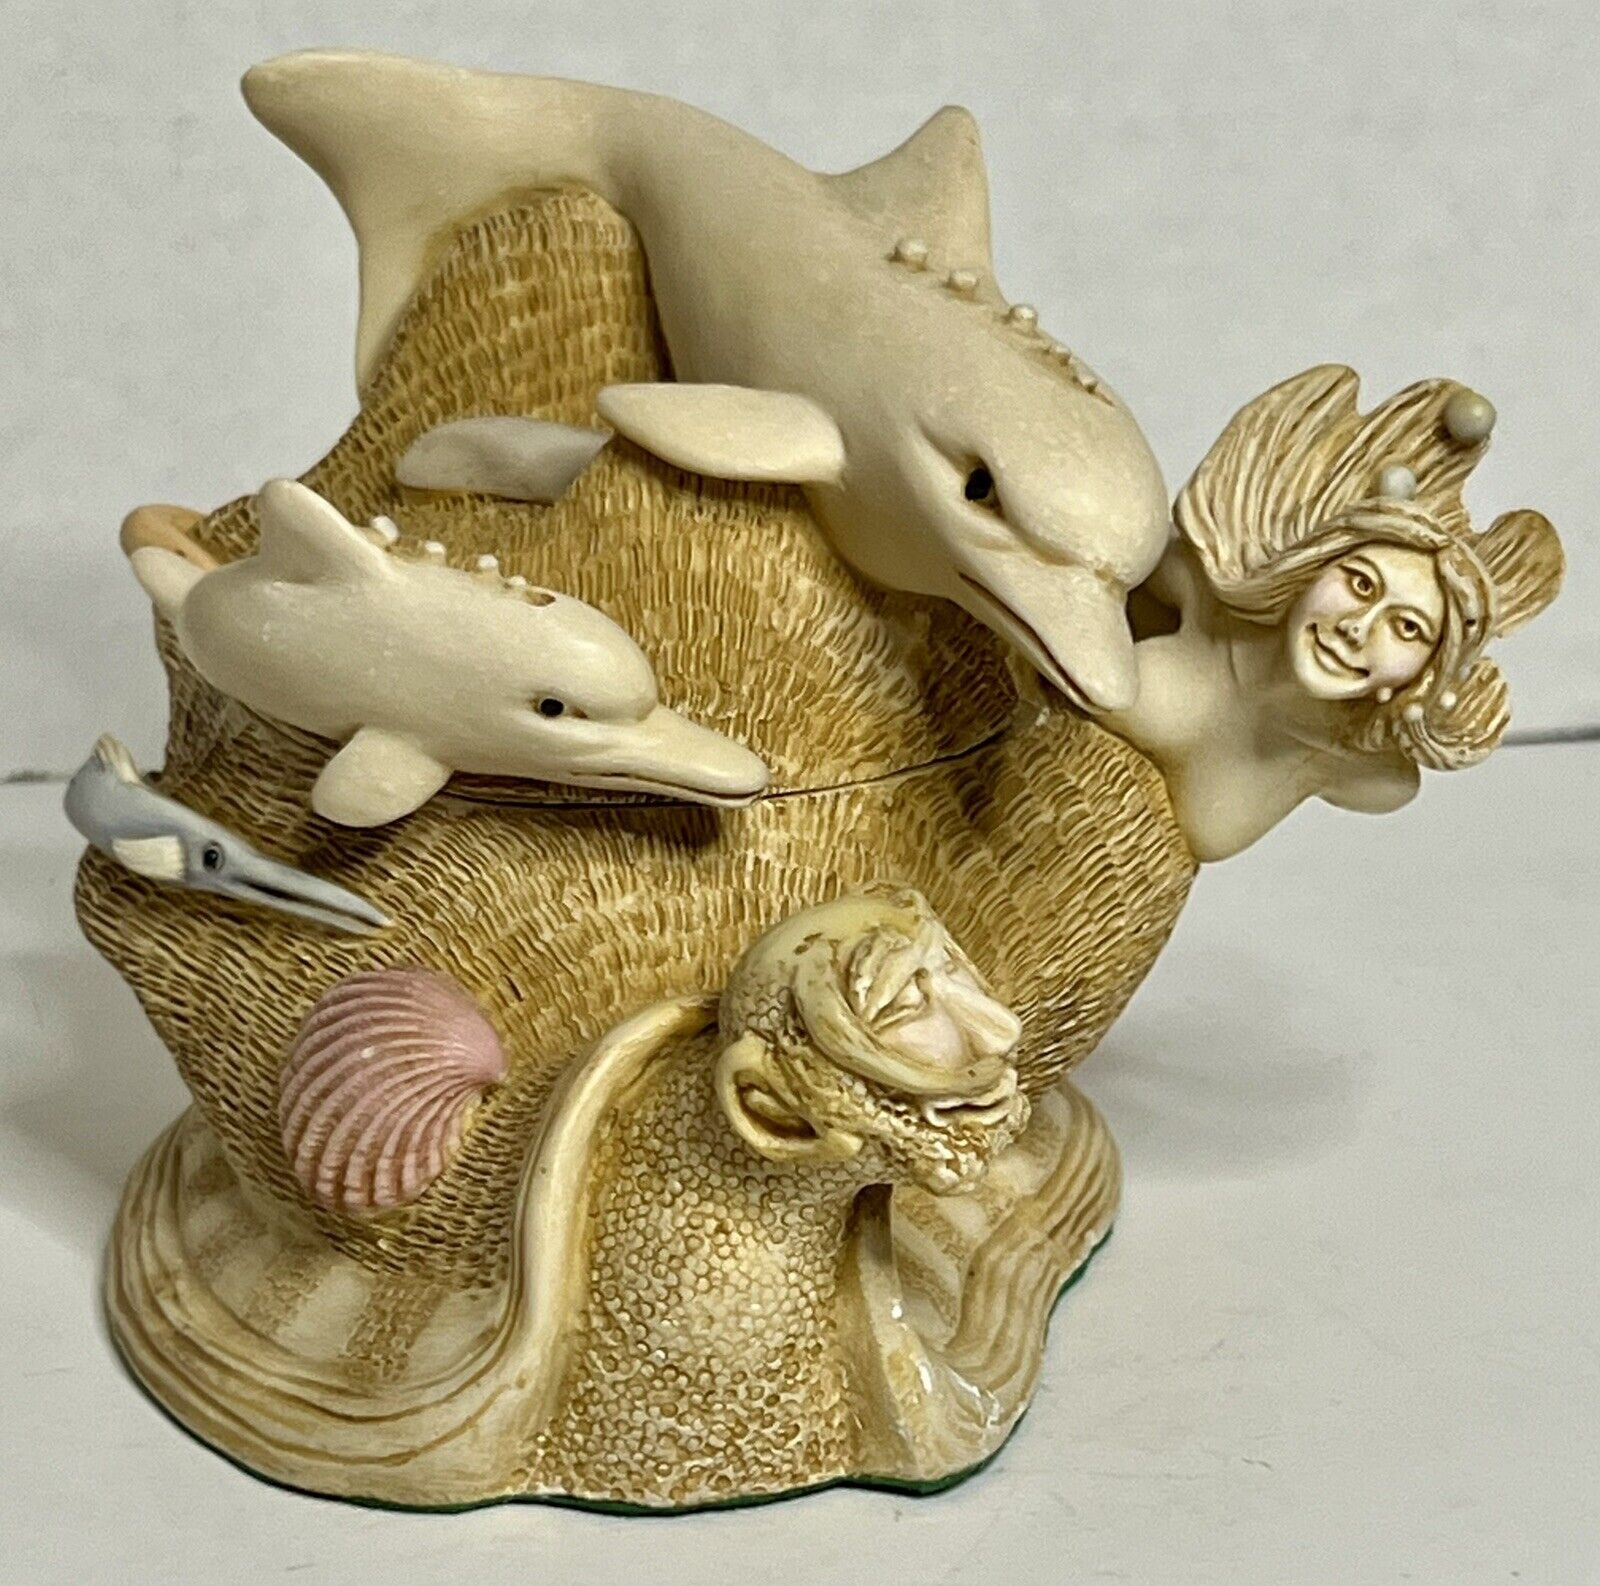 Mermaid Trinket Box from S.I.A.B. England  - Rare